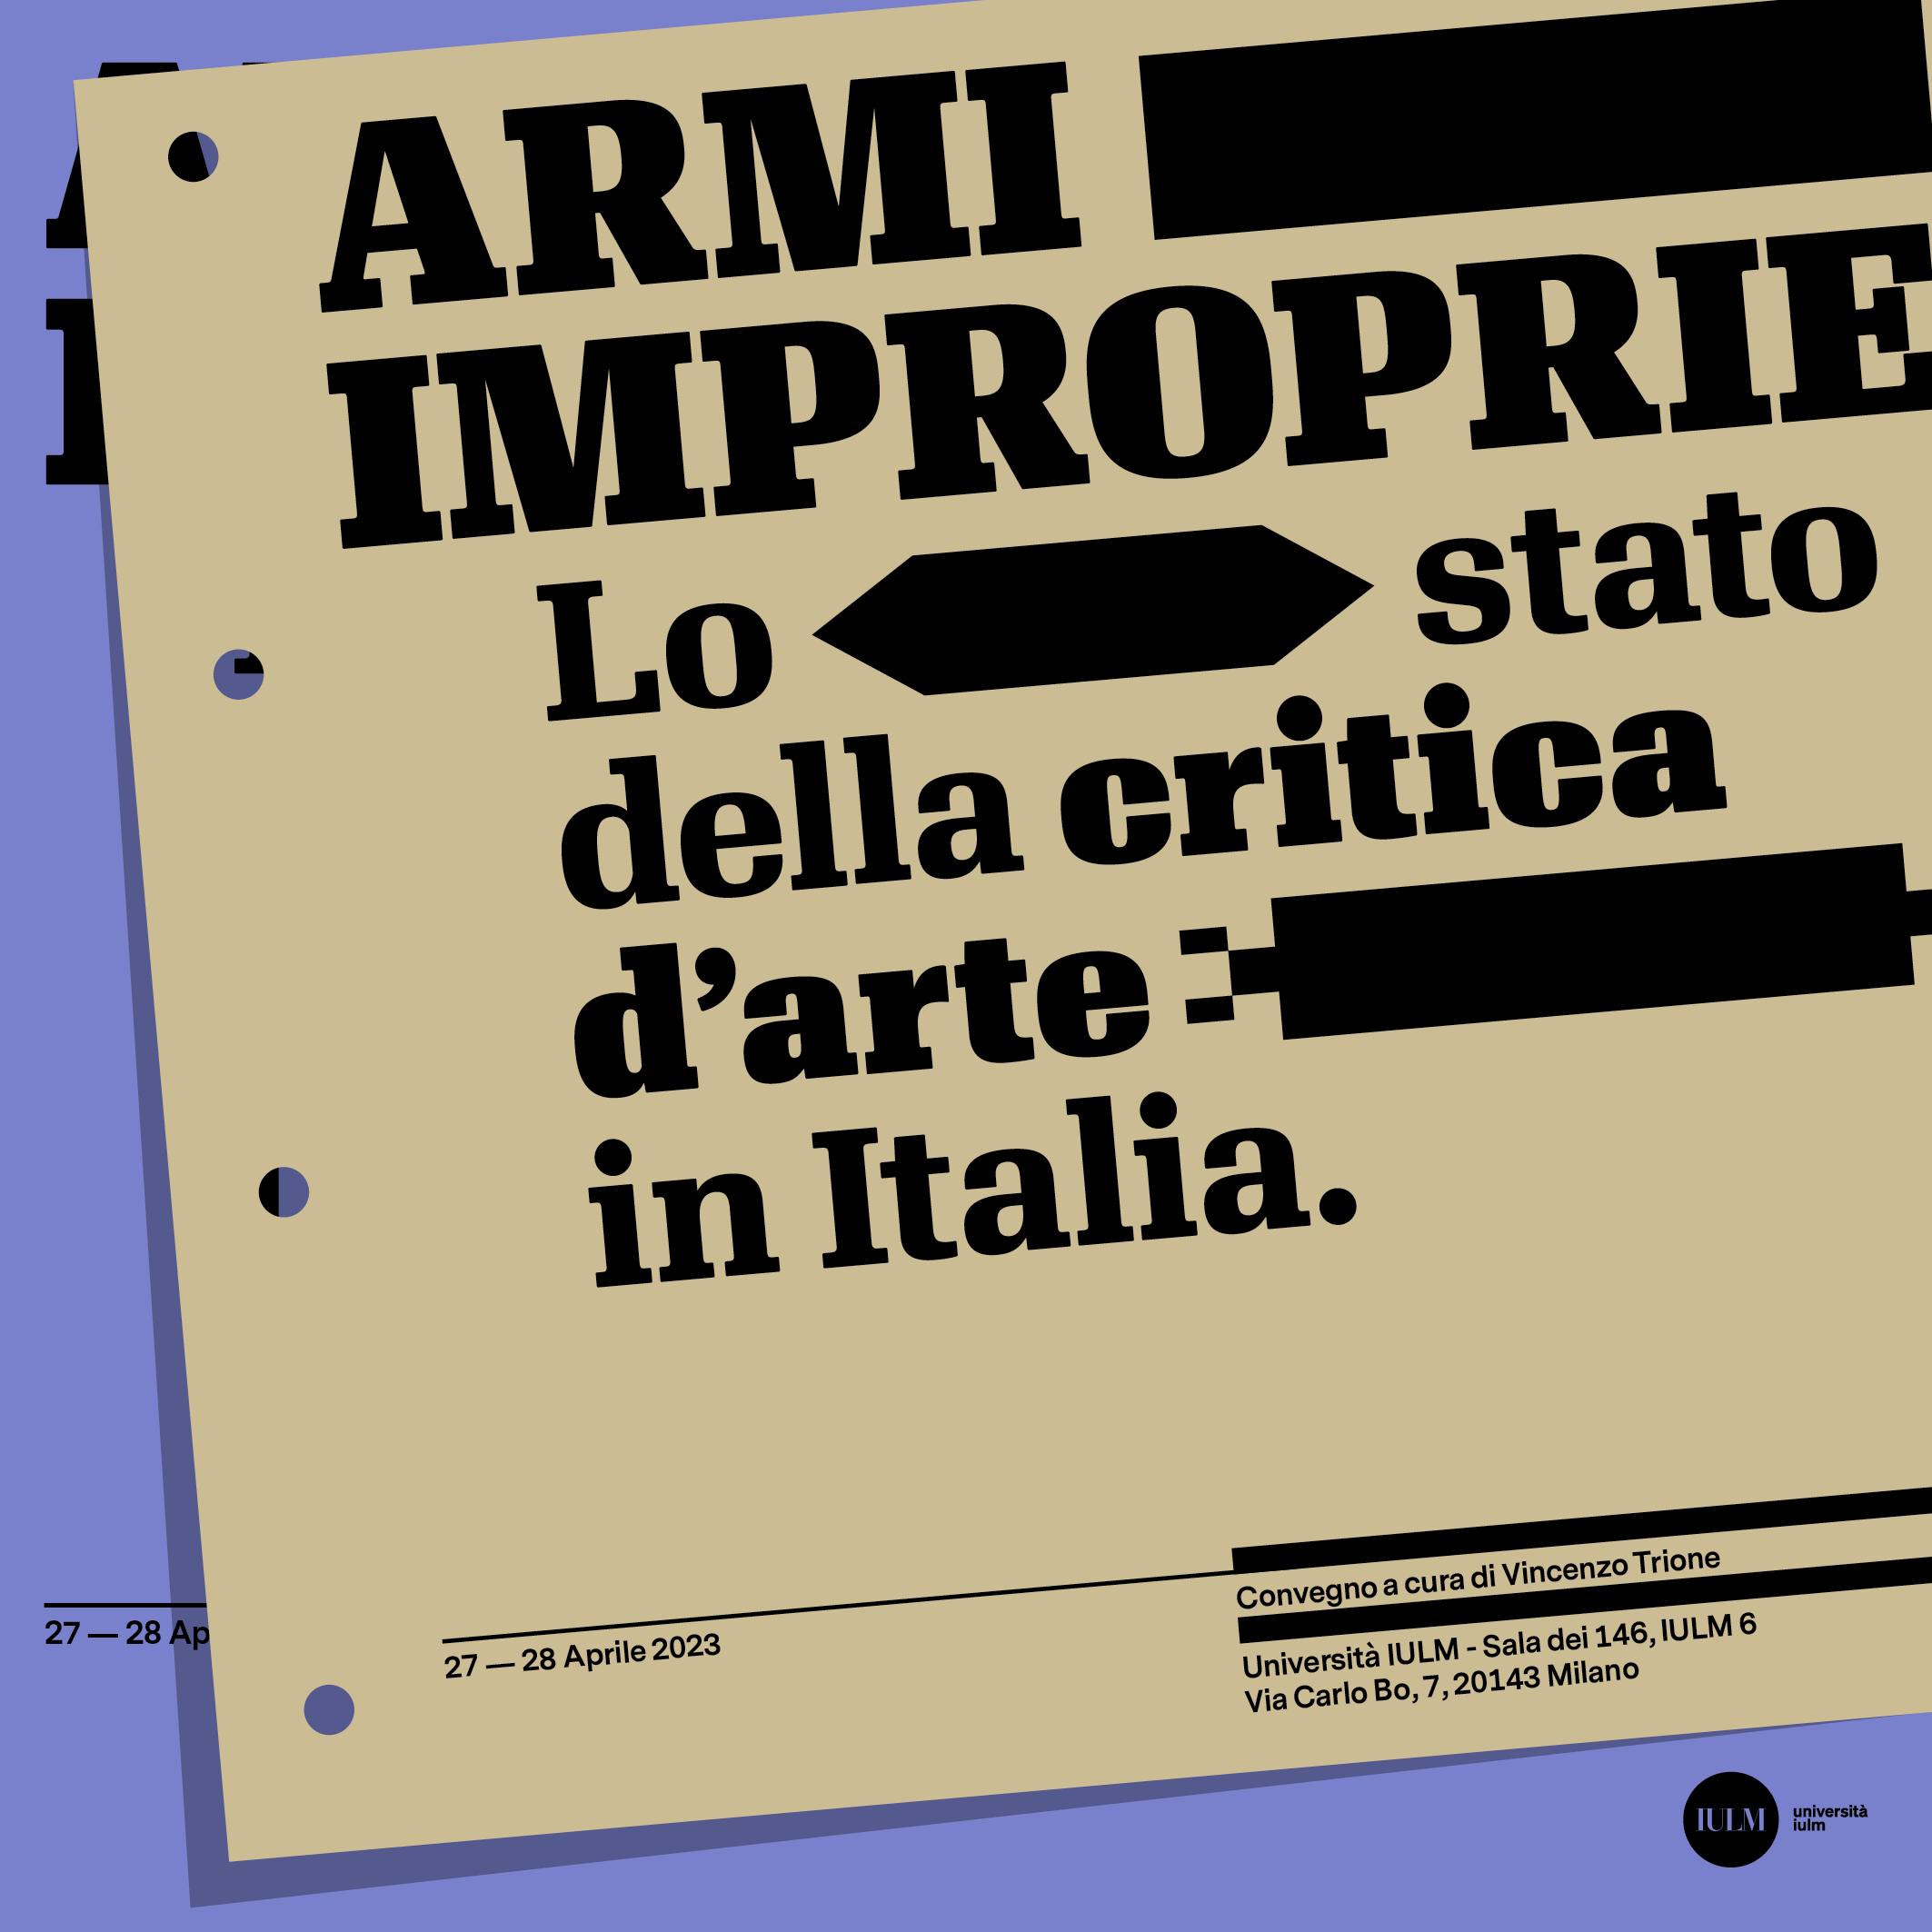 Armi improprie. Lo stato della critica d’arte in Italia